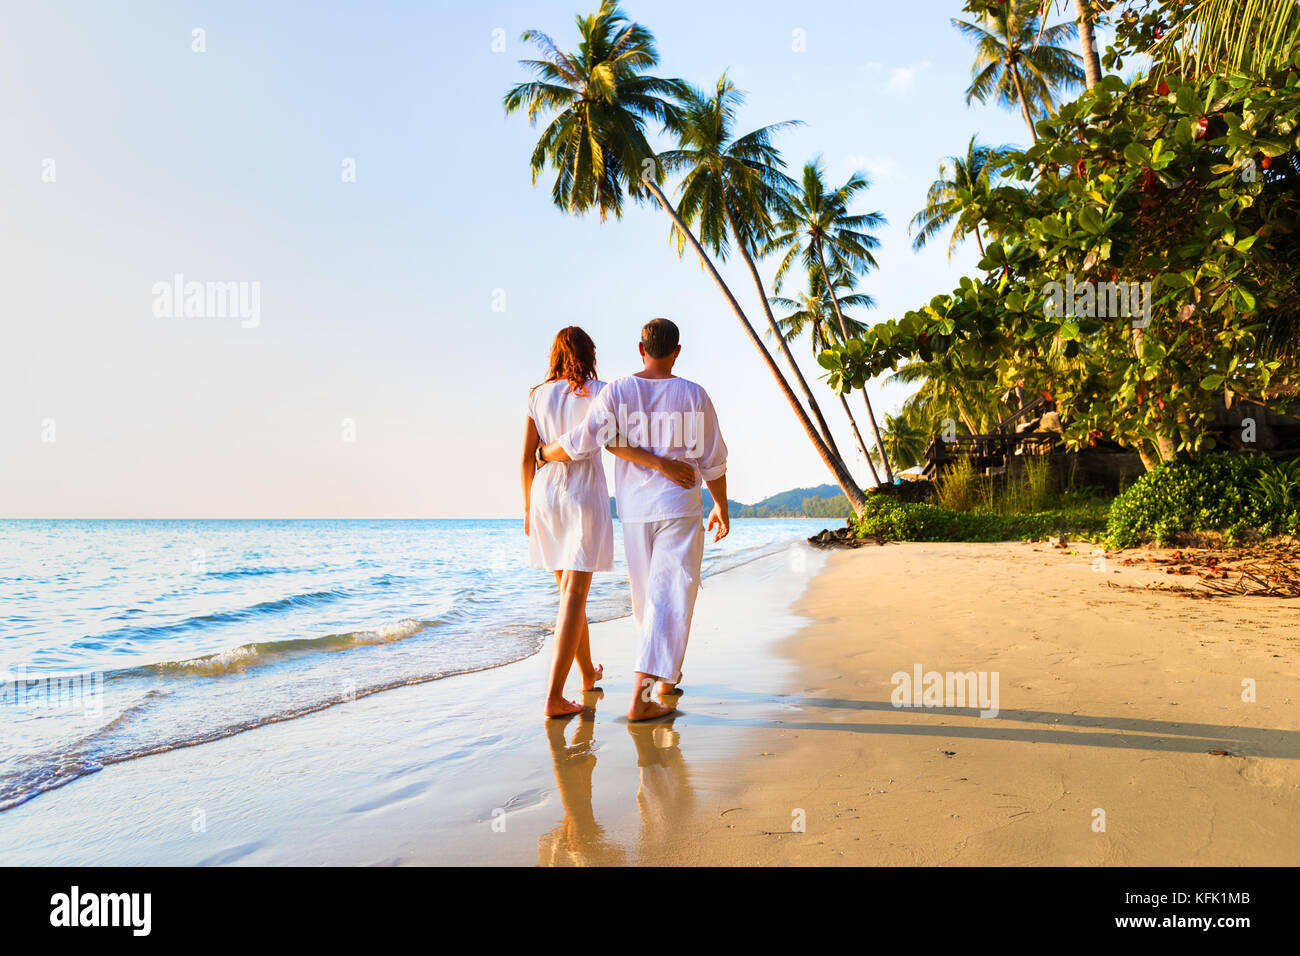 Coppia romantica camminare insieme sulla spiaggia tropicale in caldo estivo soleggiato durante la luna di miele vacanze Foto Stock